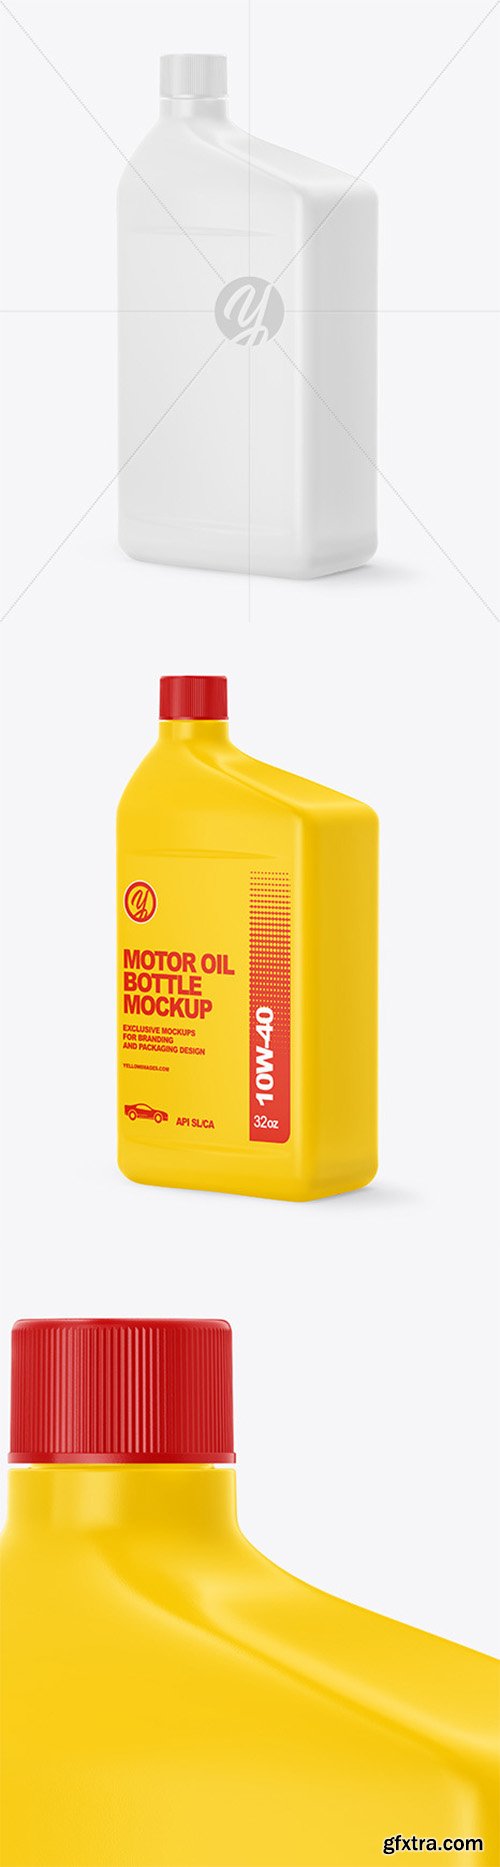 Motor Oil Bottle Mockup 61592